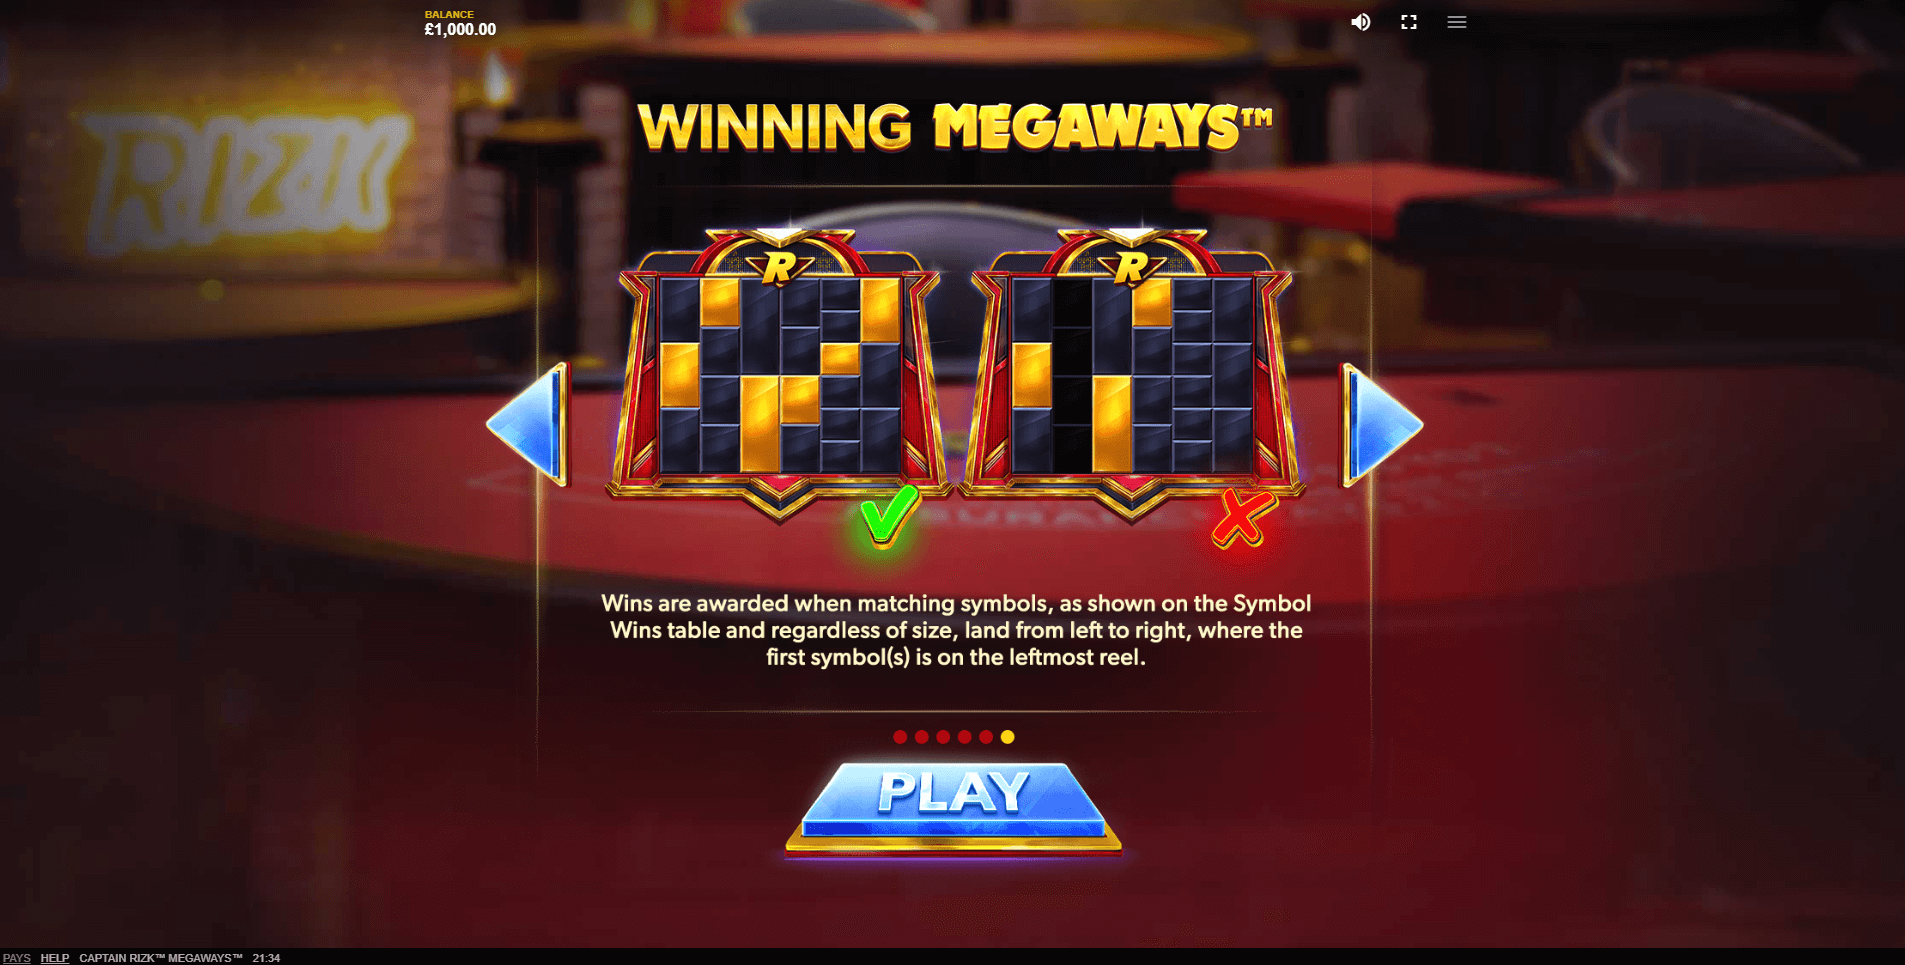 captain rizk megaways slot machine detail image 4